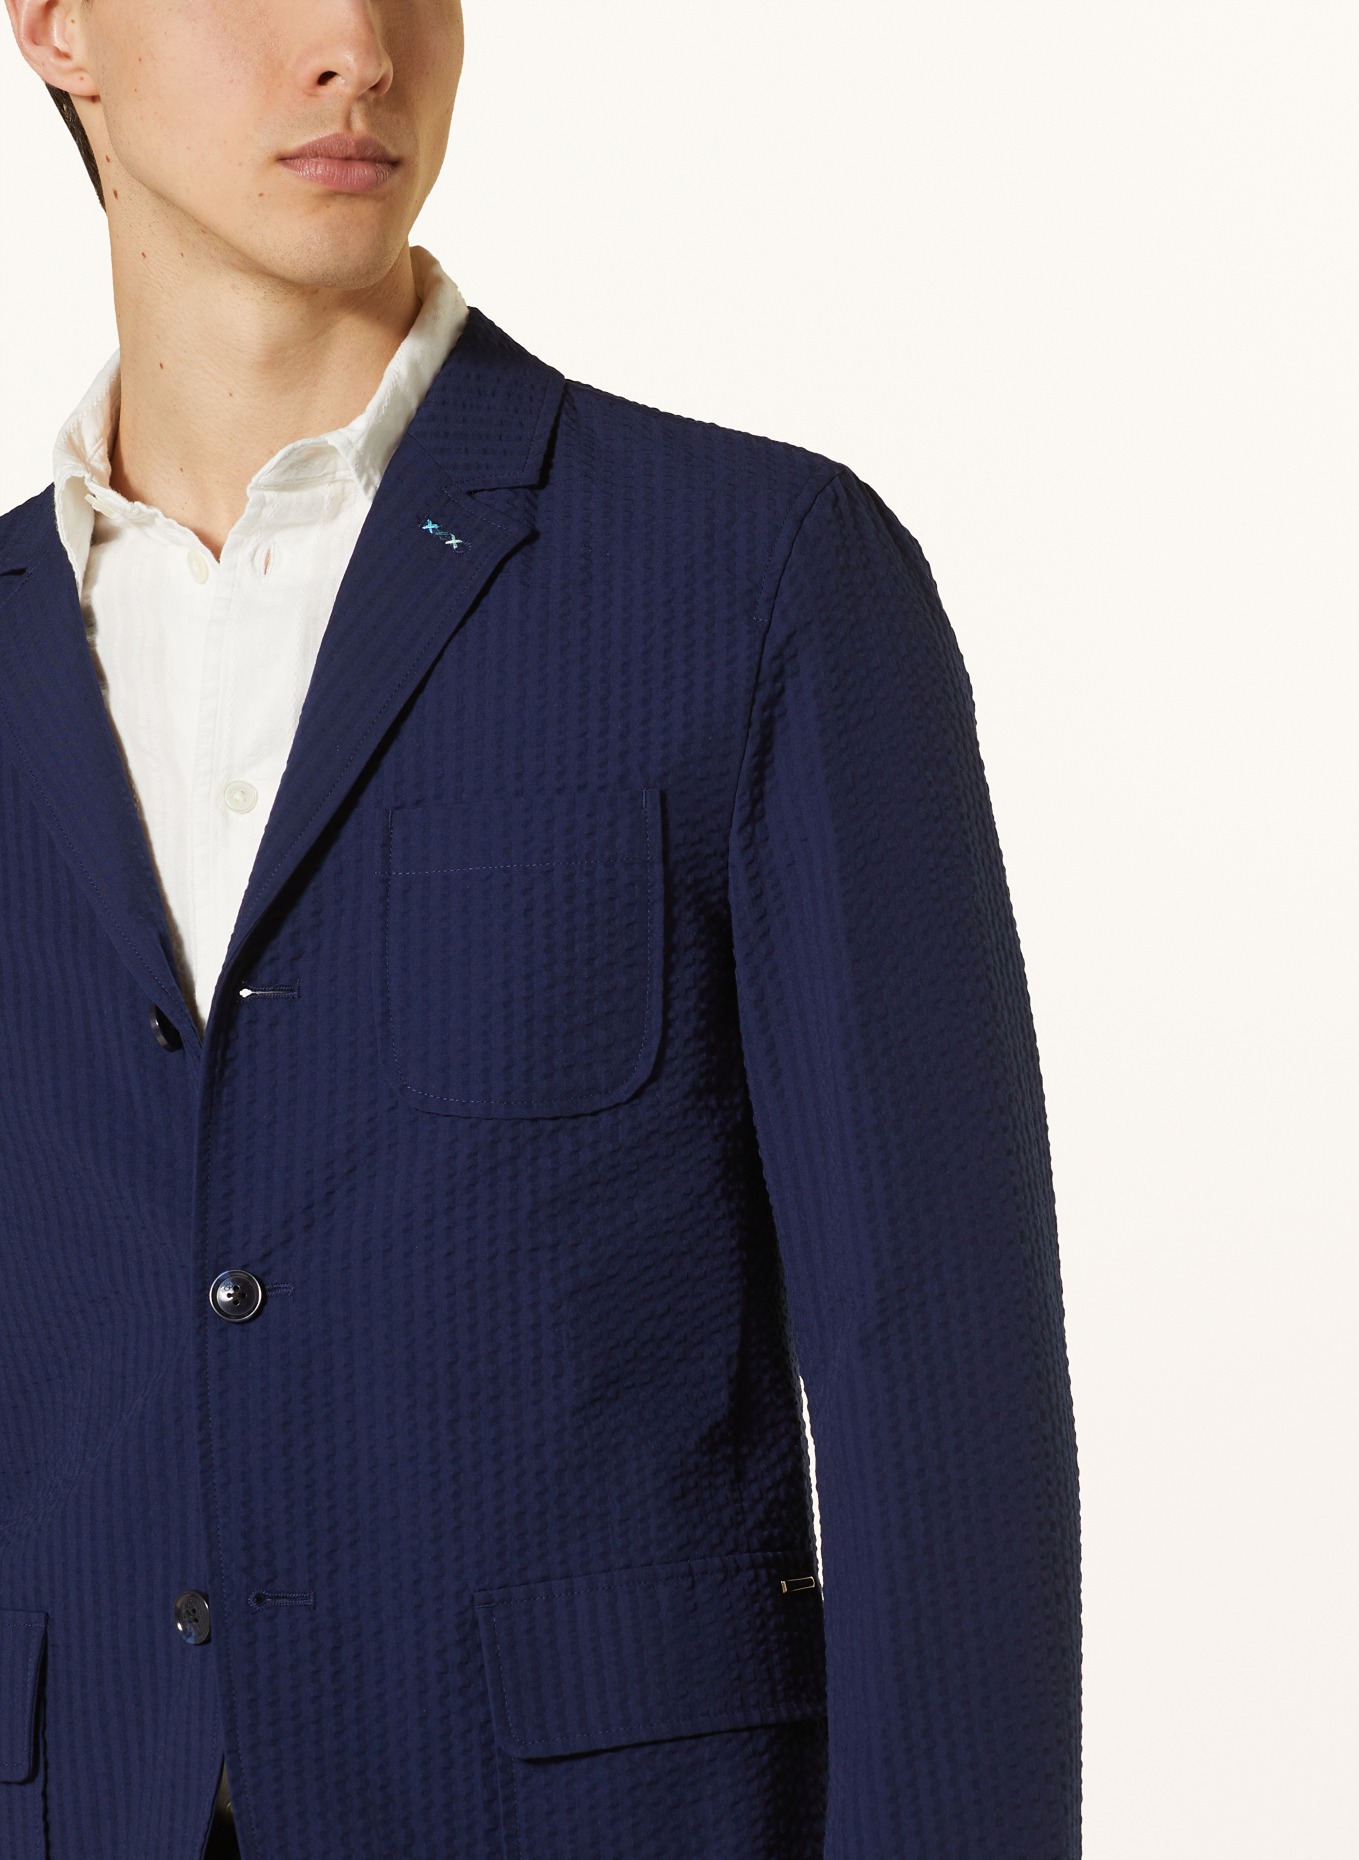 SCOTCH & SODA Suit jacket regular fit, Color: DARK BLUE (Image 5)